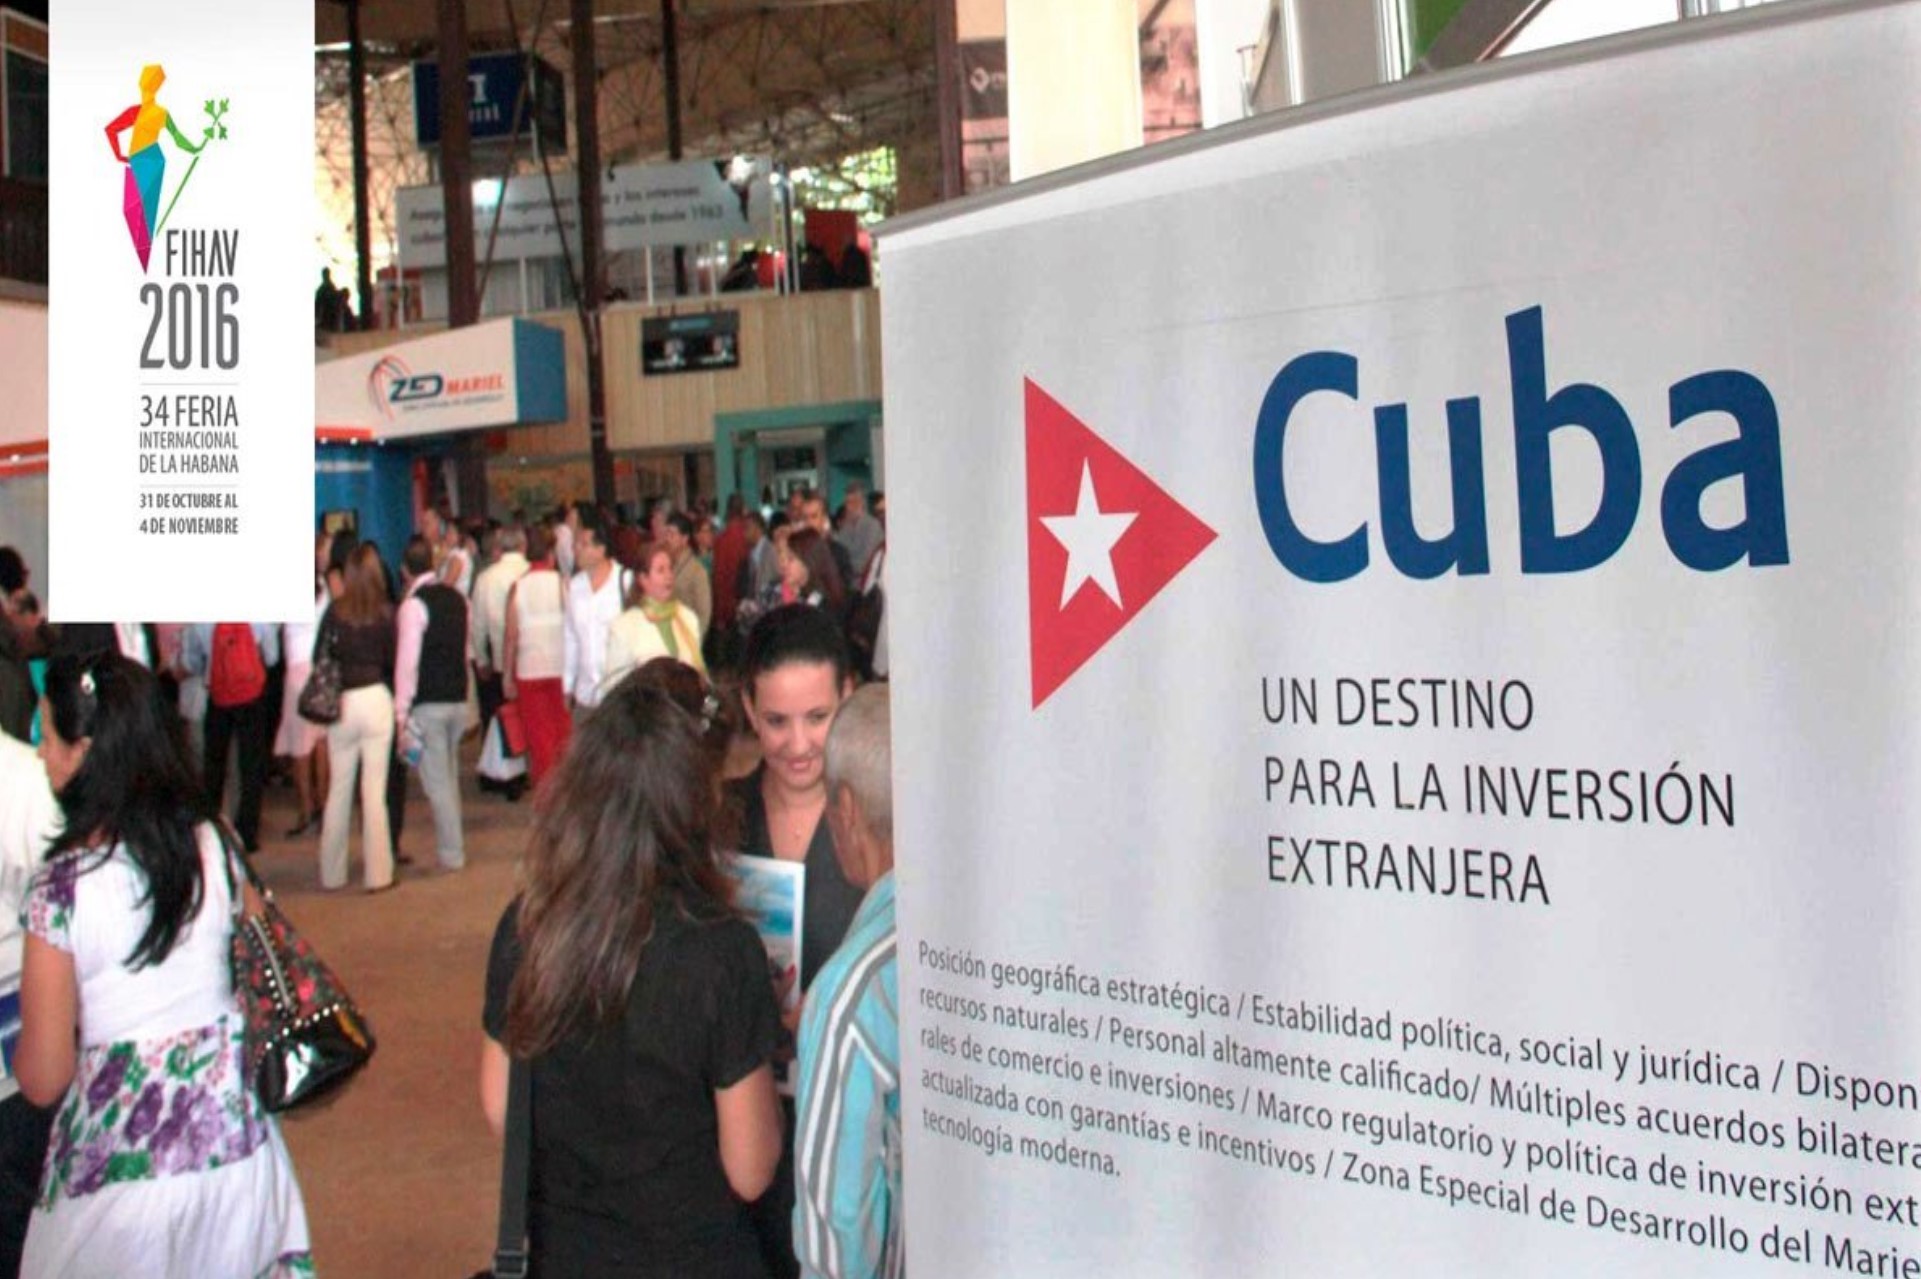 La inversión extranjera directa en Cuba: balance del presente y mirada estratégica al futuro